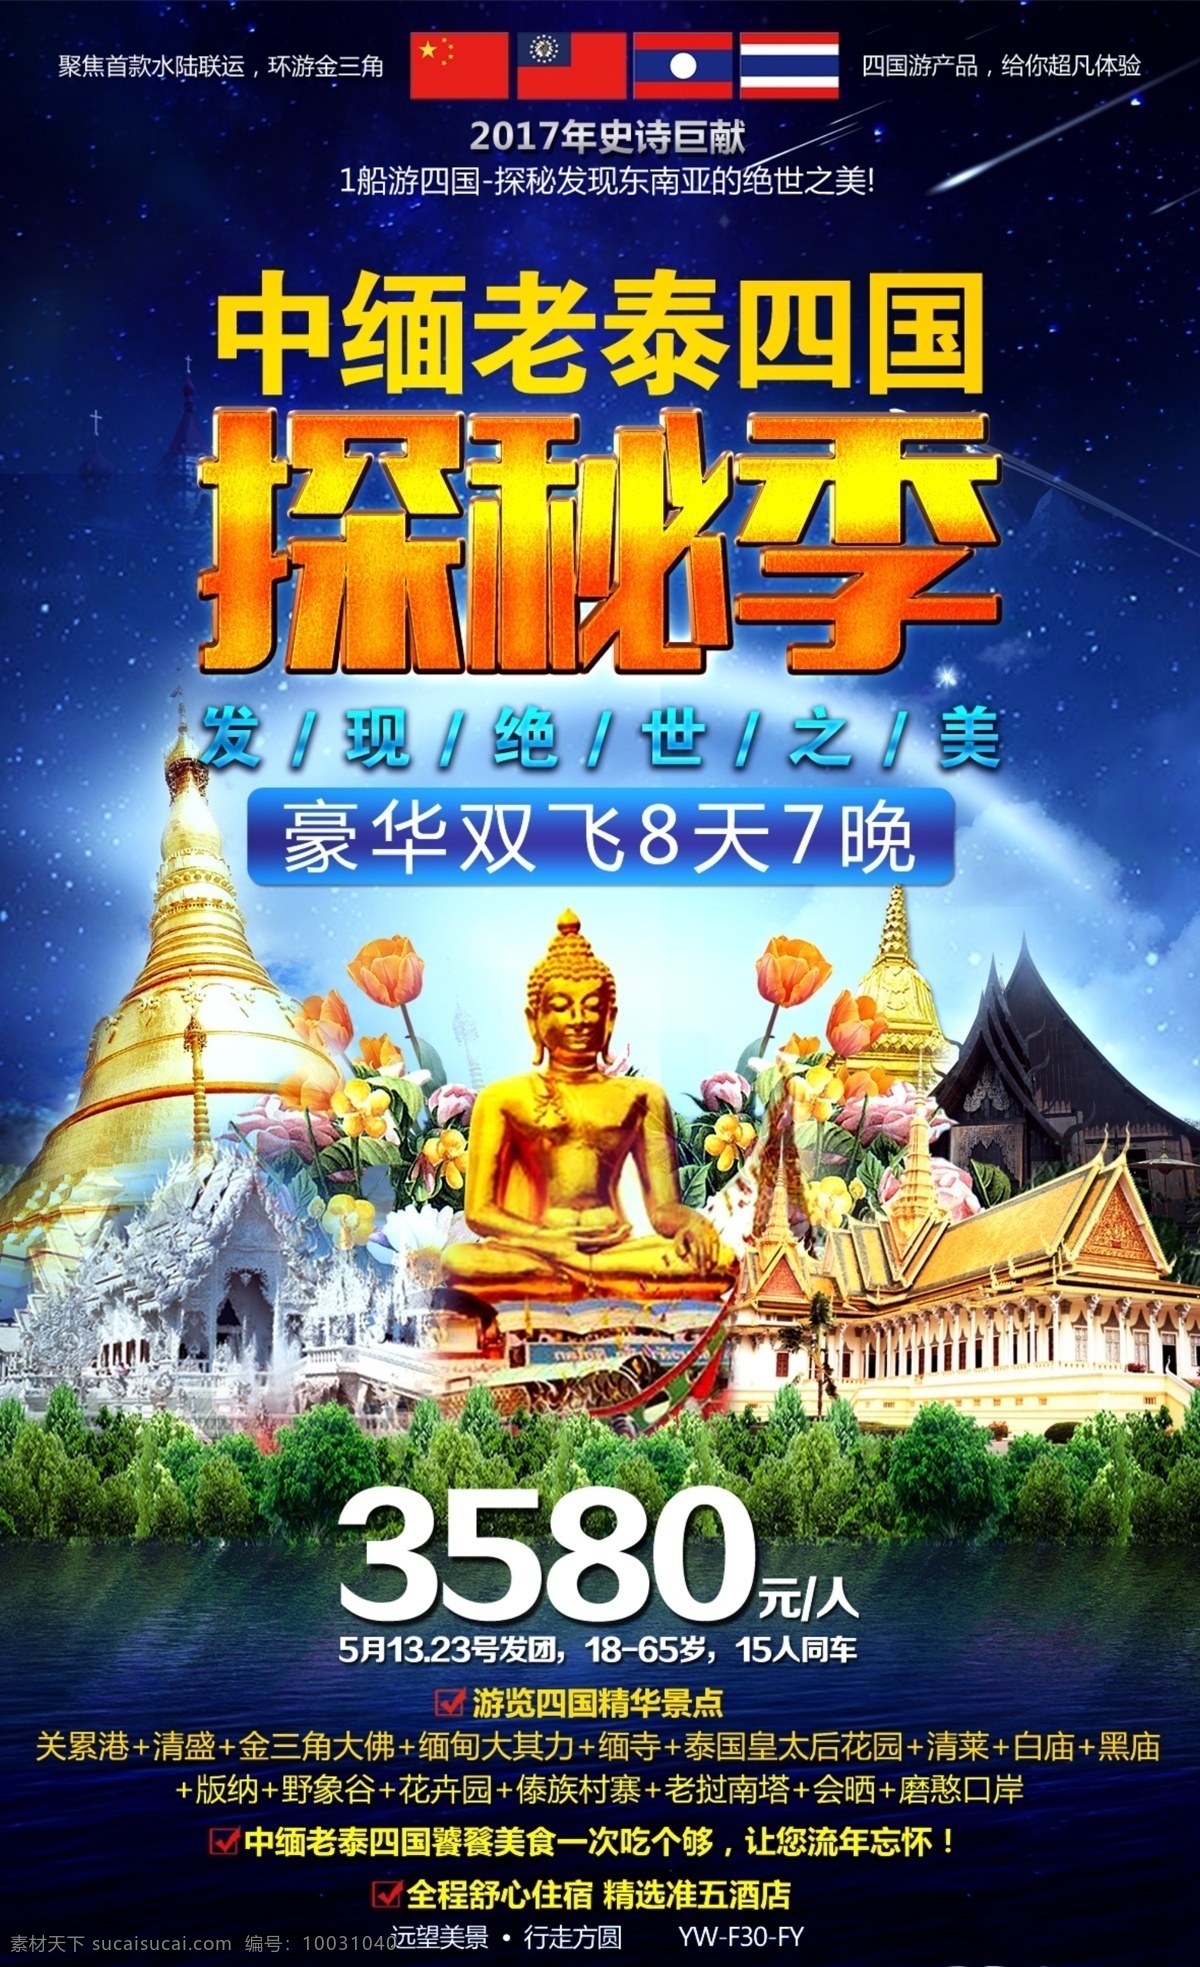 中 缅 老 泰 四国 探秘 季 缅甸 老挝 泰国 探秘之旅 旅游广告 旅游宣传图 海报 佛像 星空